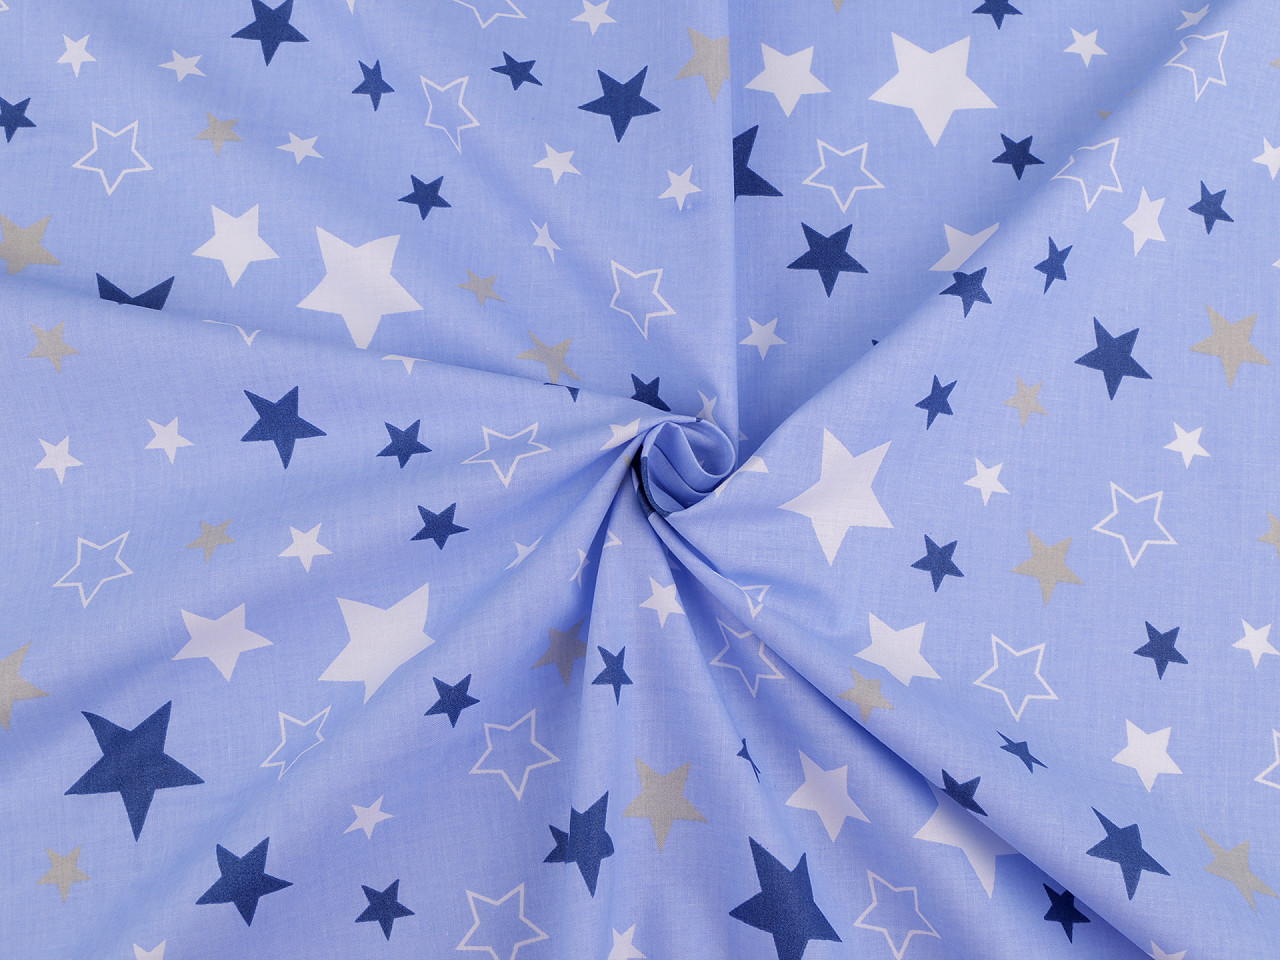 Bavlněná látka / plátno hvězdy Varianta: 6 (364) modrá nebeská, Balení: 1 m